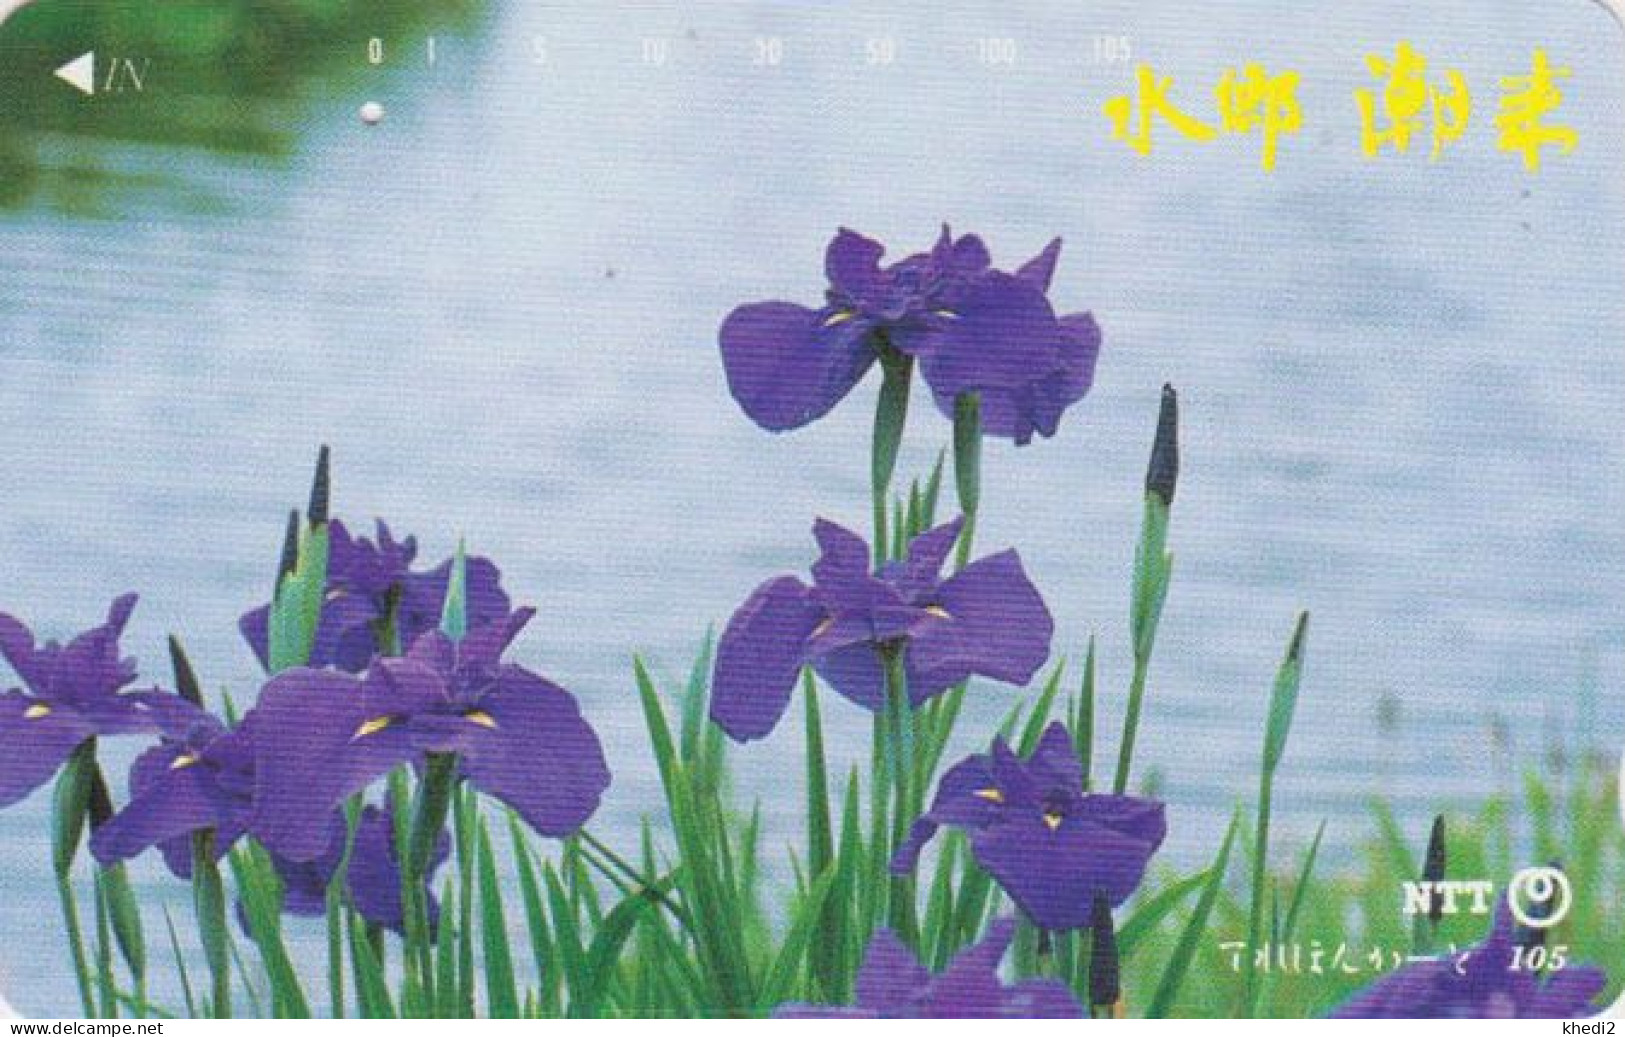 Télécarte JAPON / NTT 251-003 B ** 1 PUNCH ** - FLEUR IRIS D'EAU - FLOWER JAPAN Phonecard - Flores